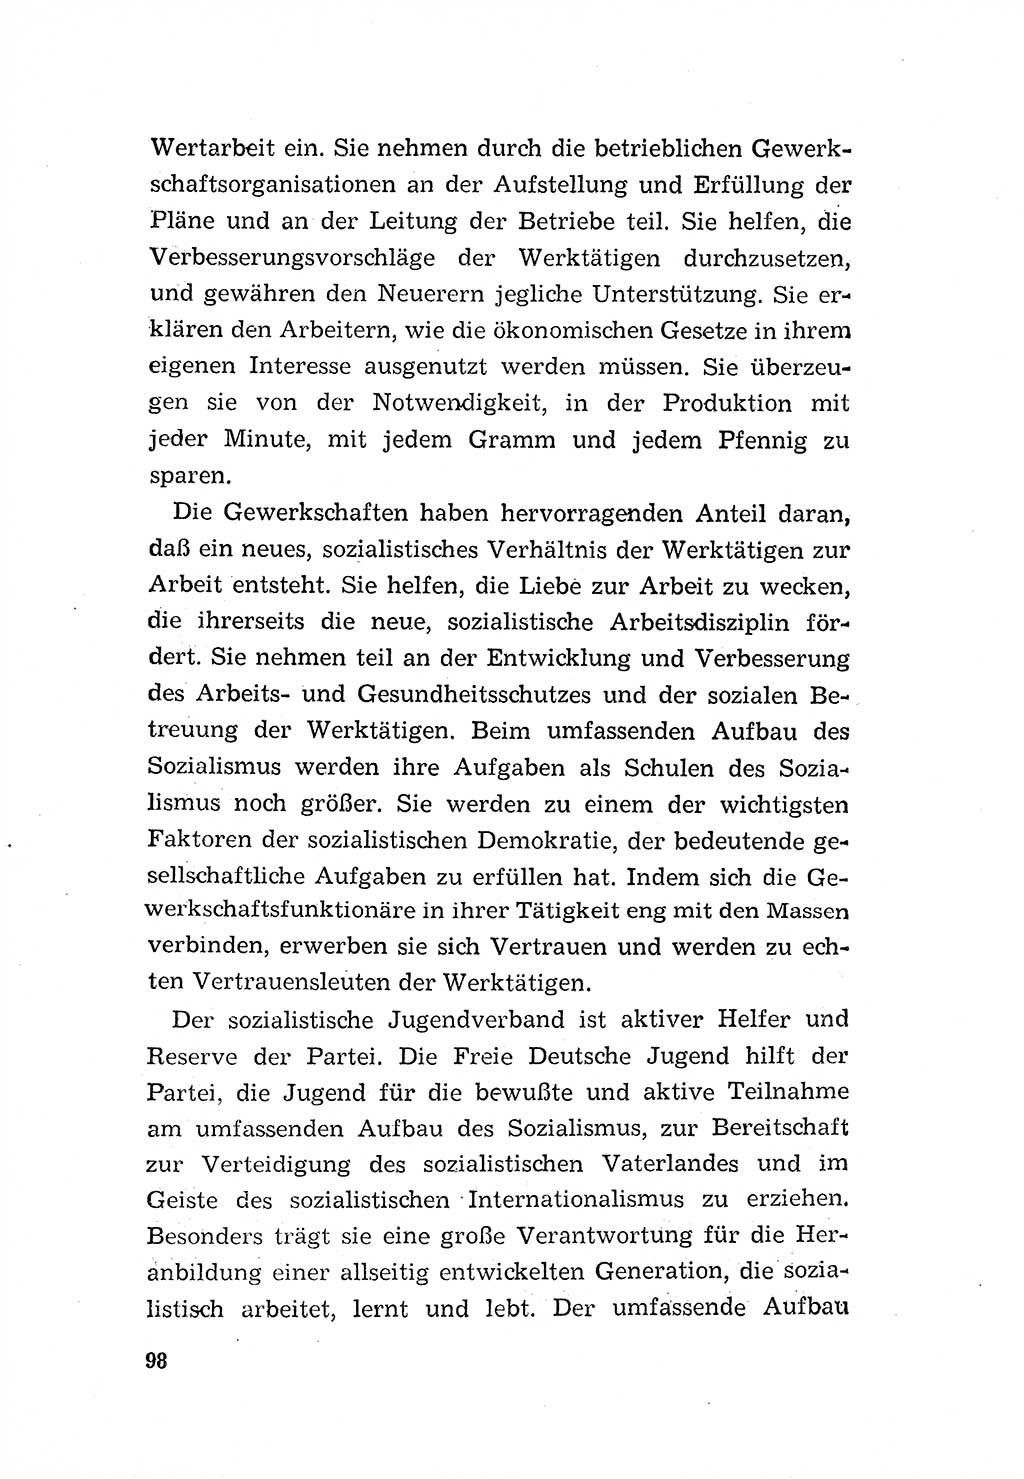 Programm der Sozialistischen Einheitspartei Deutschlands (SED) [Deutsche Demokratische Republik (DDR)] 1963, Seite 98 (Progr. SED DDR 1963, S. 98)